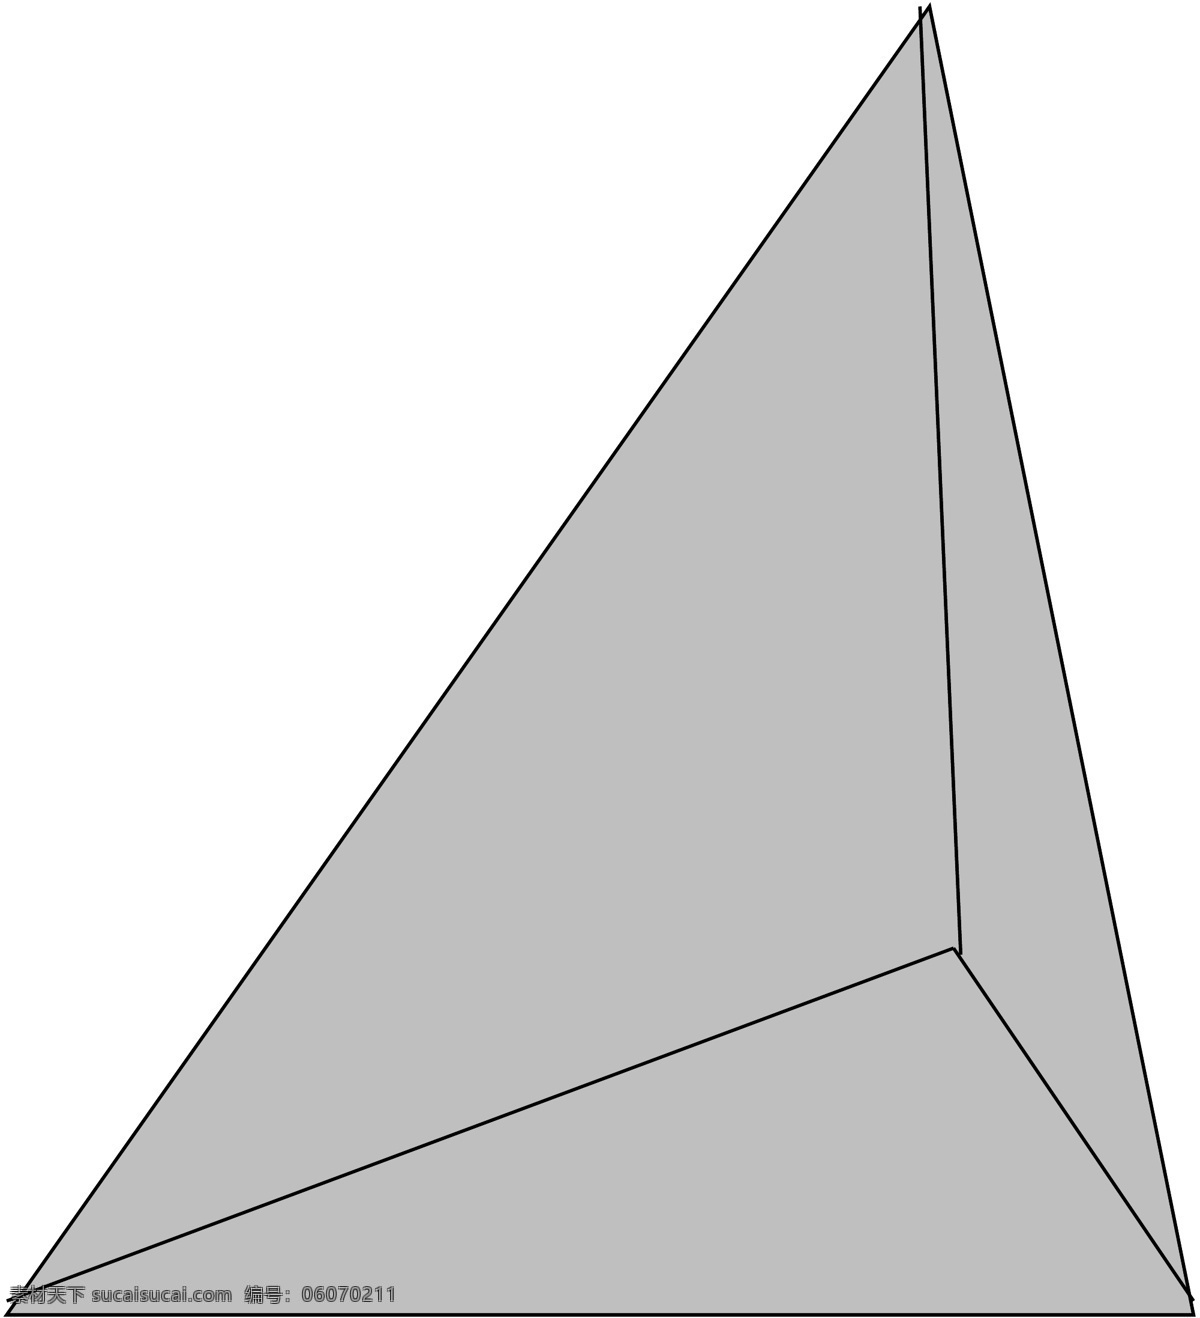 三角体 立体几何 几何图形 立体 几何 矢量 其他矢量 矢量素材 矢量图库